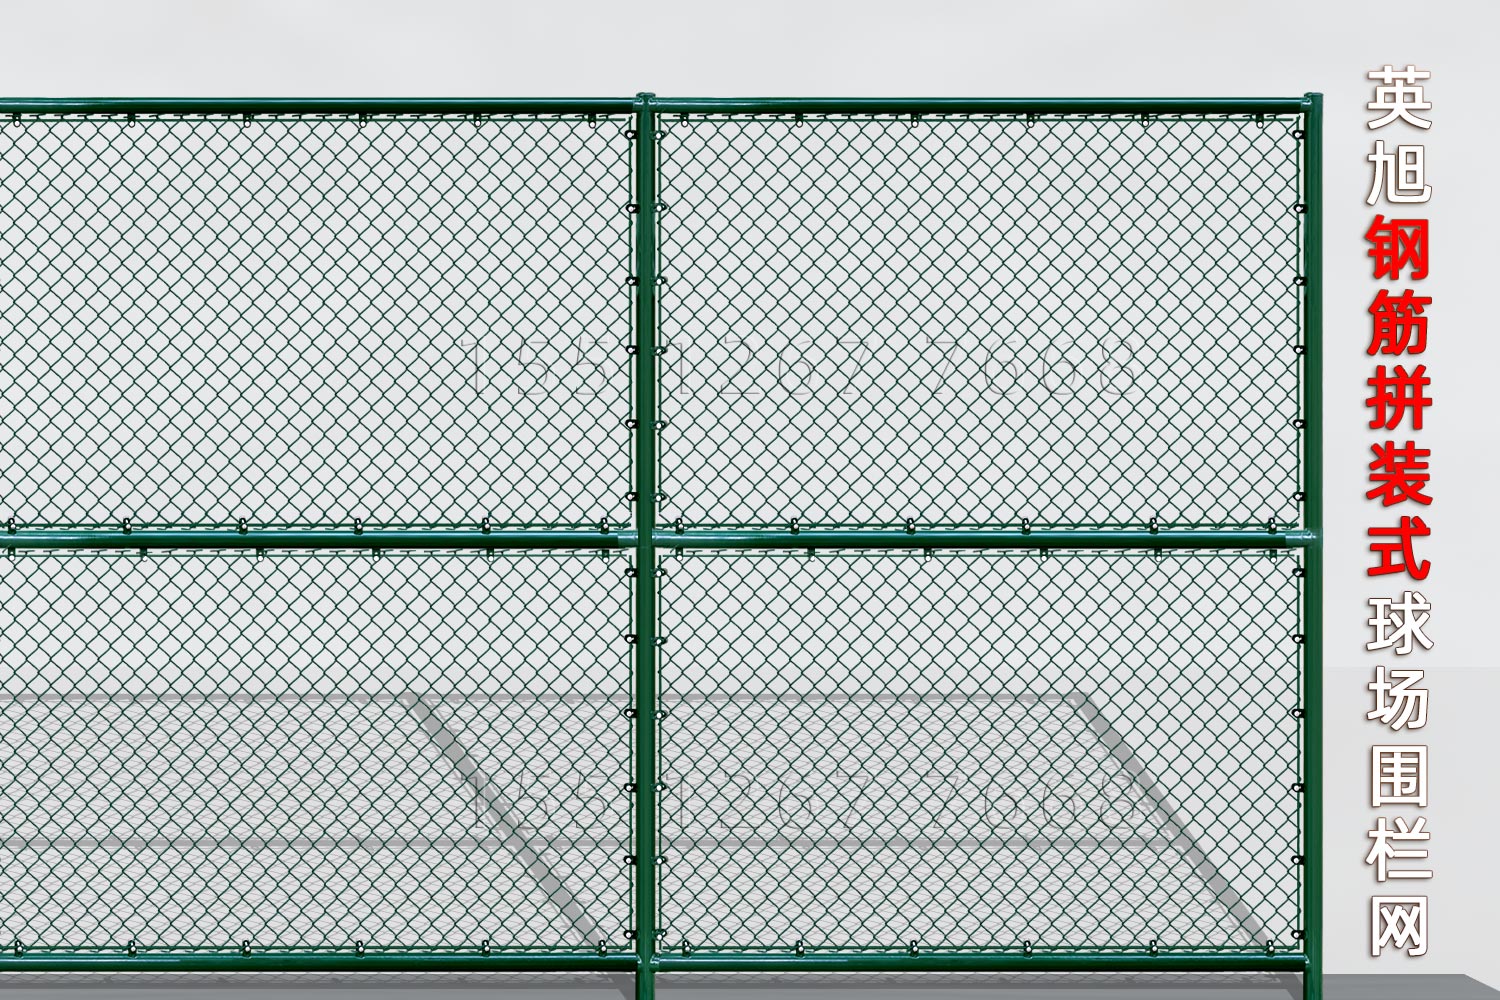 山西省钢筋组装式球场围栏网